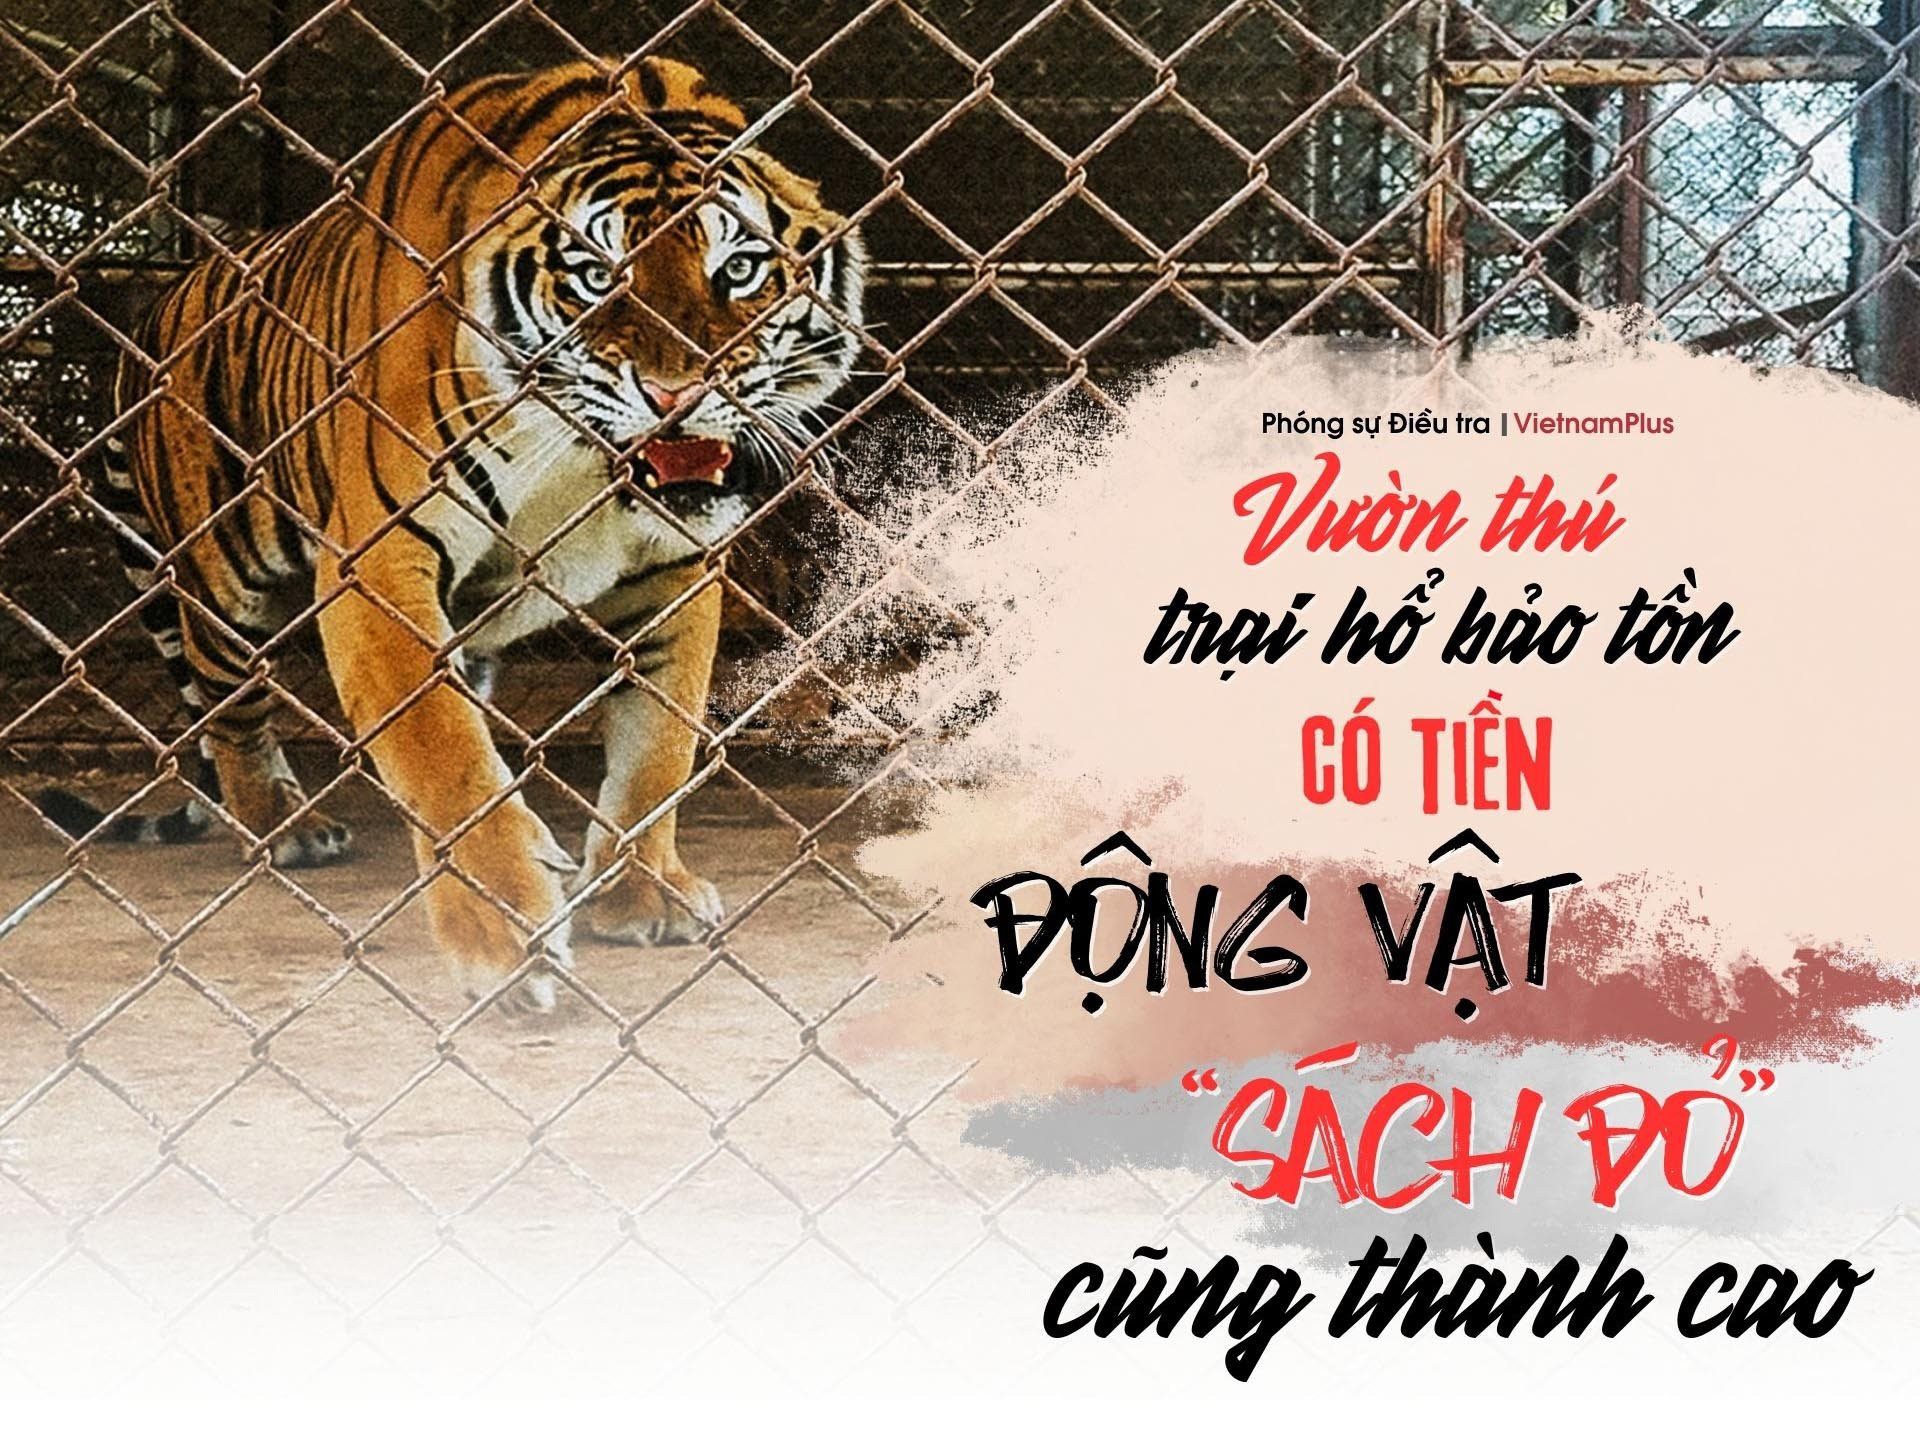 Bài 2: Vườn thú, trại hổ bảo tồn: Có tiền động vật “sách đỏ” cũng thành cao